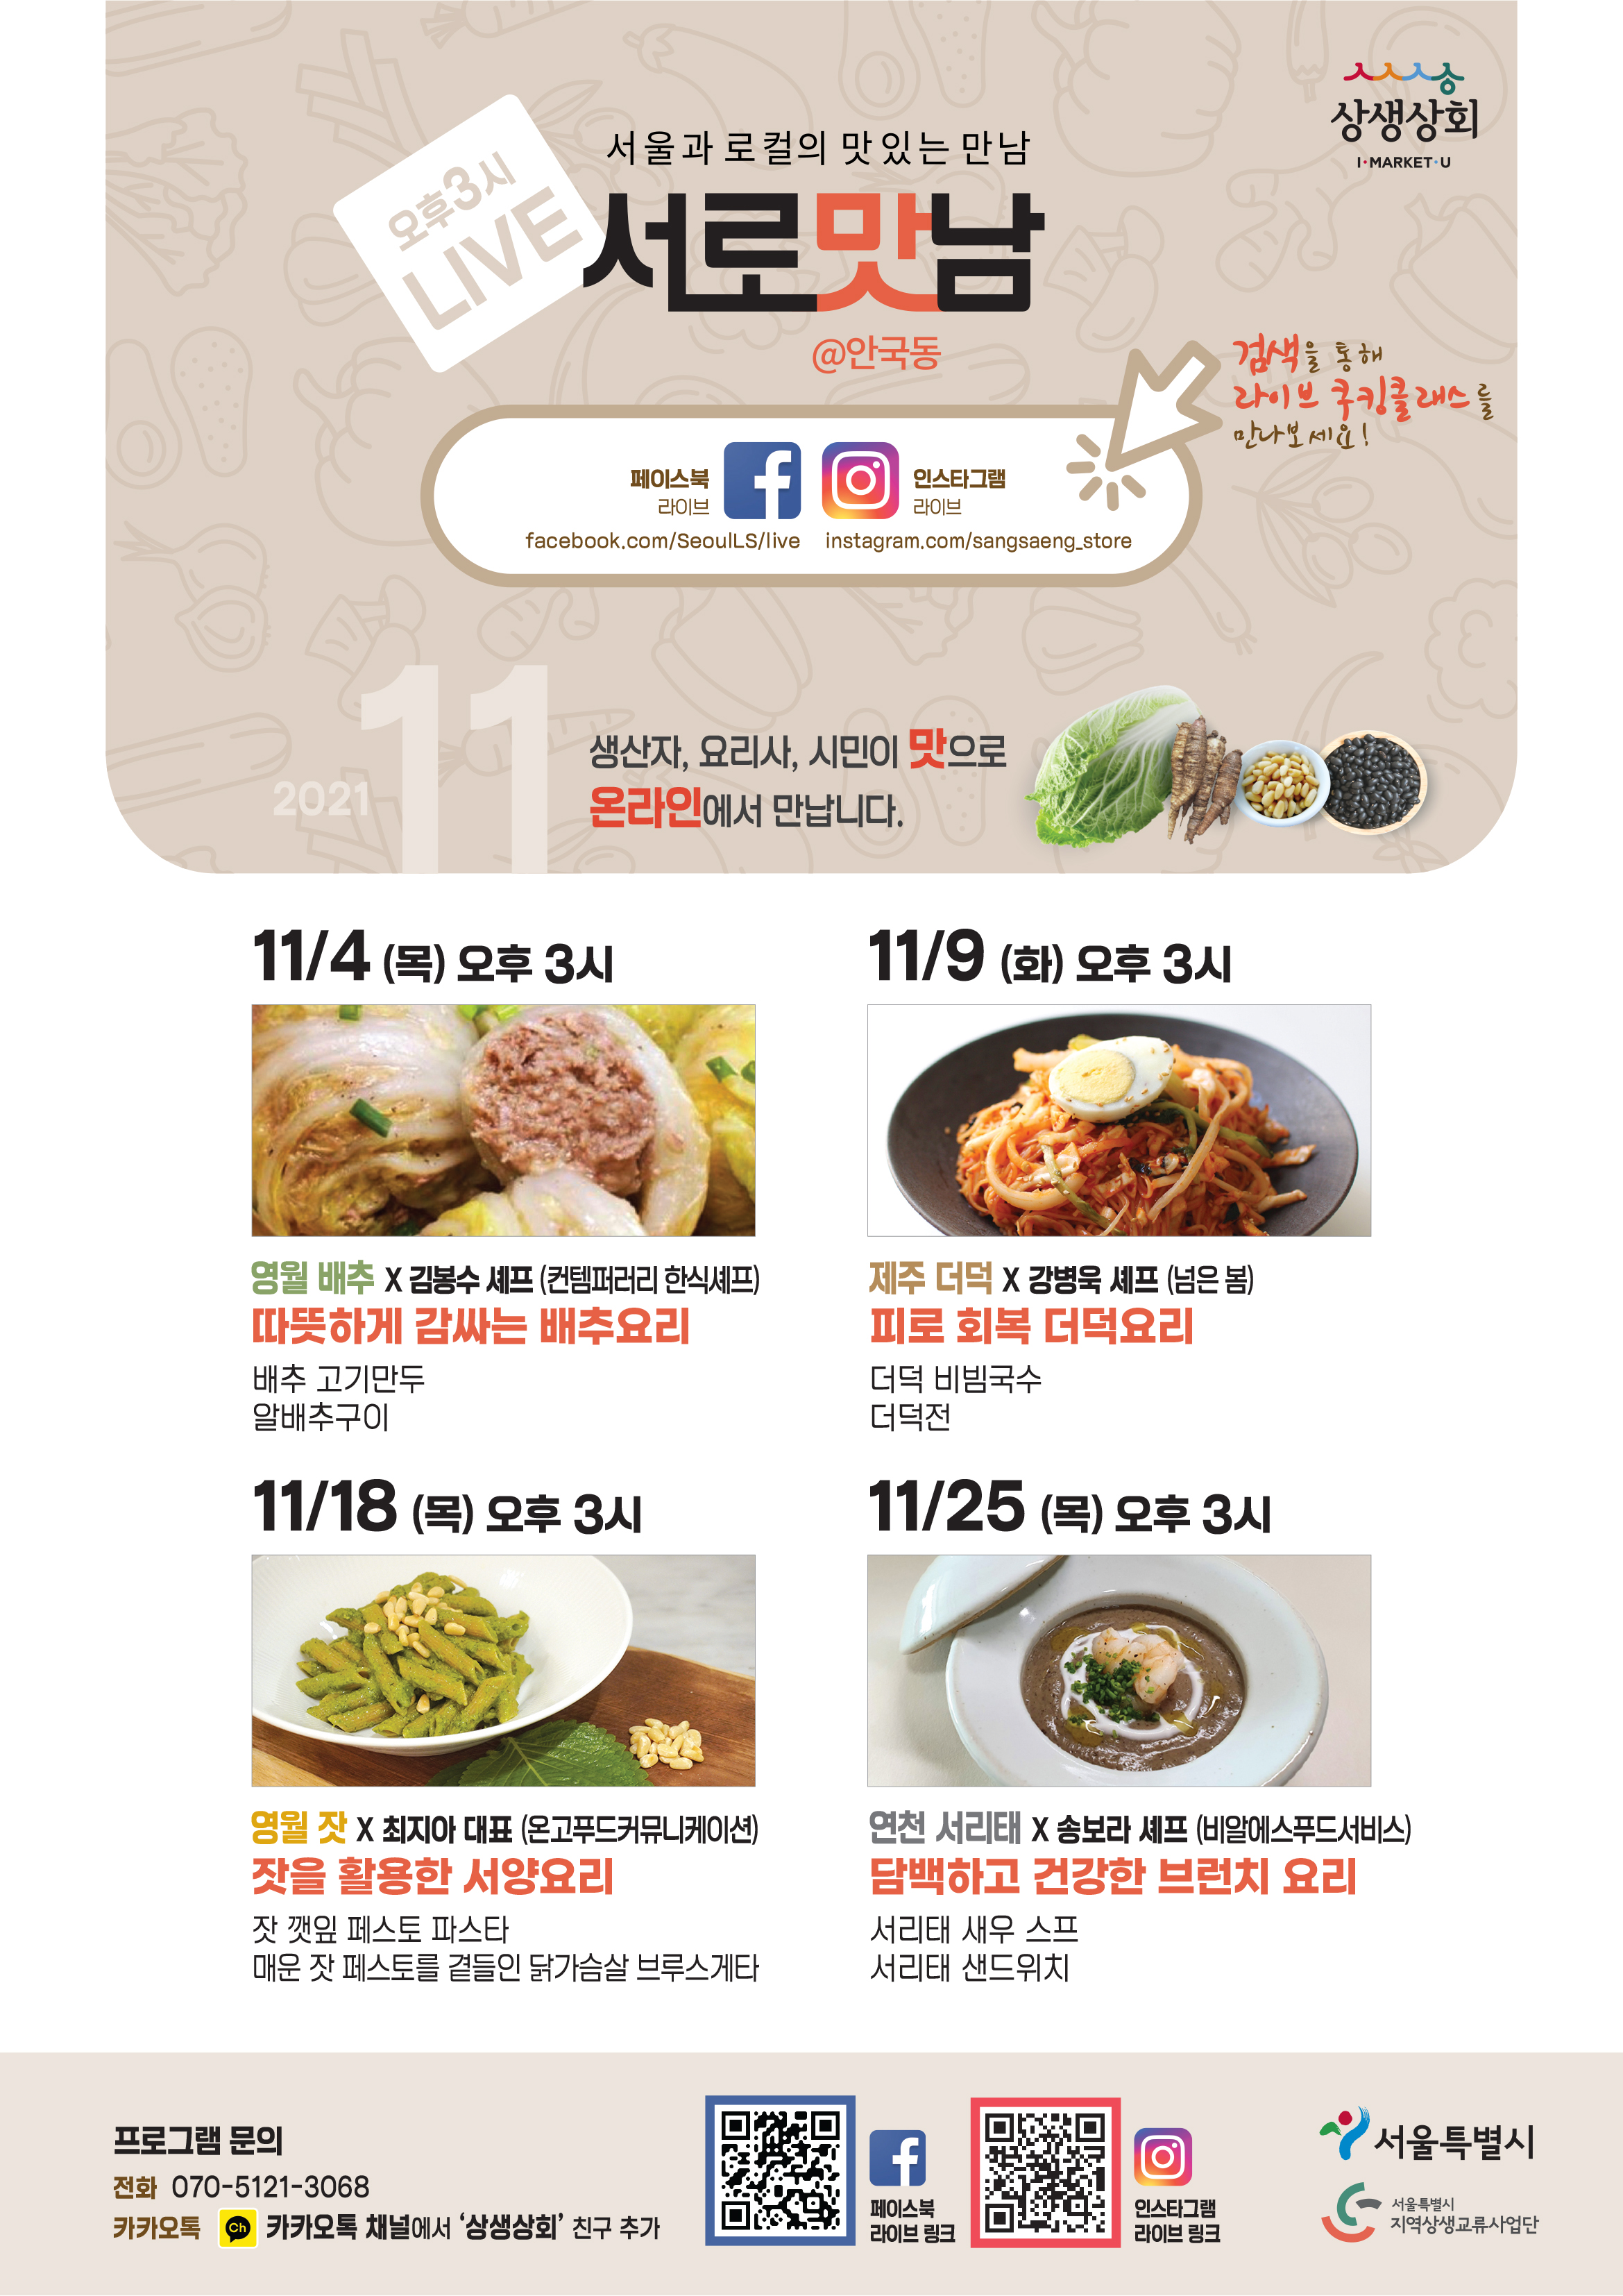 11월 서울과 로컬의 맛있는 만남 서로맛남 포스터. 프로그램 문의 070-5121-3068